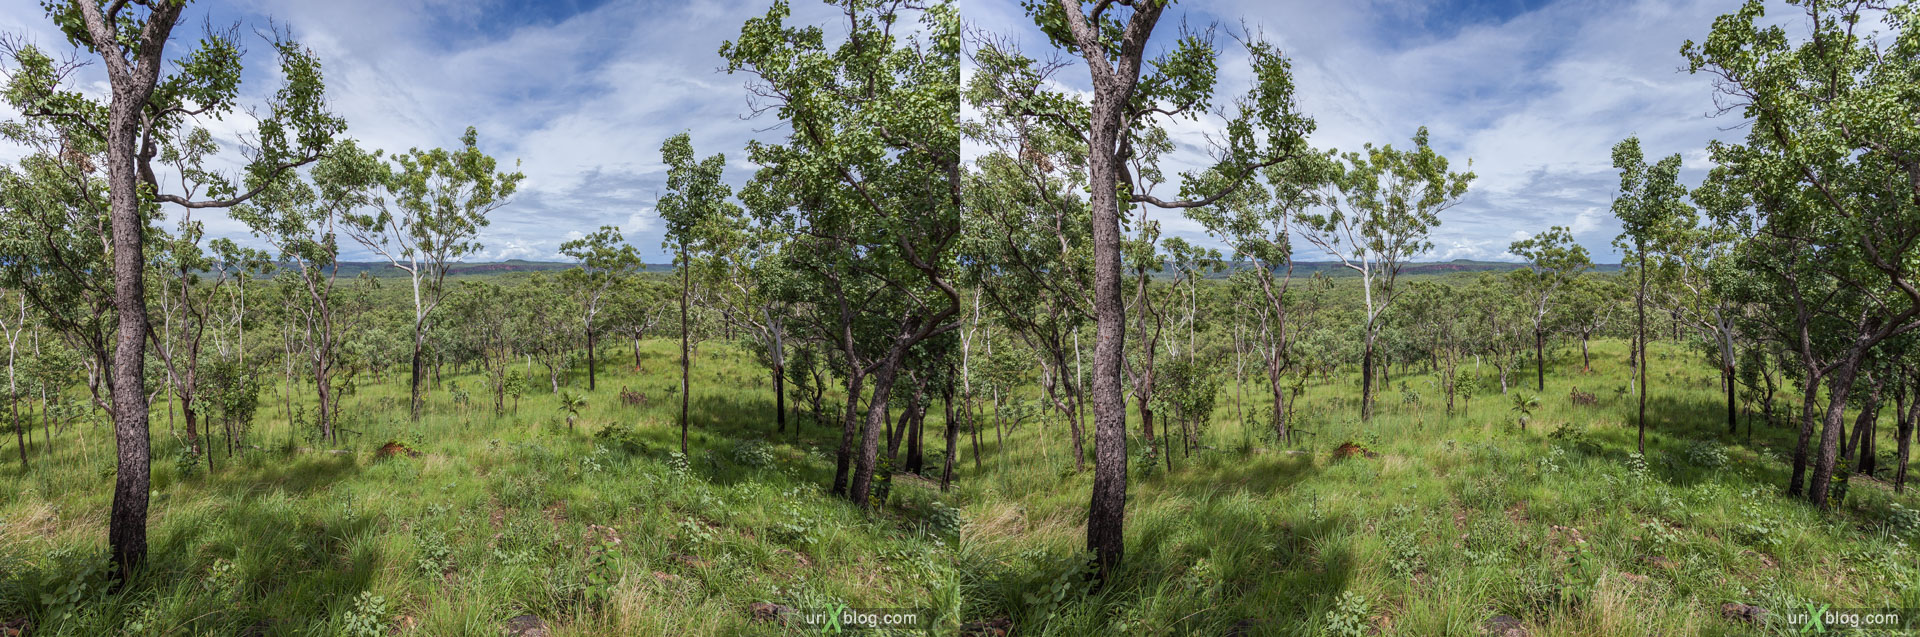 лес, панорама, Kakadu National Park, Северная территория, Австралия, 3D, перекрёстная стереопара, стерео, стереопара, 2011